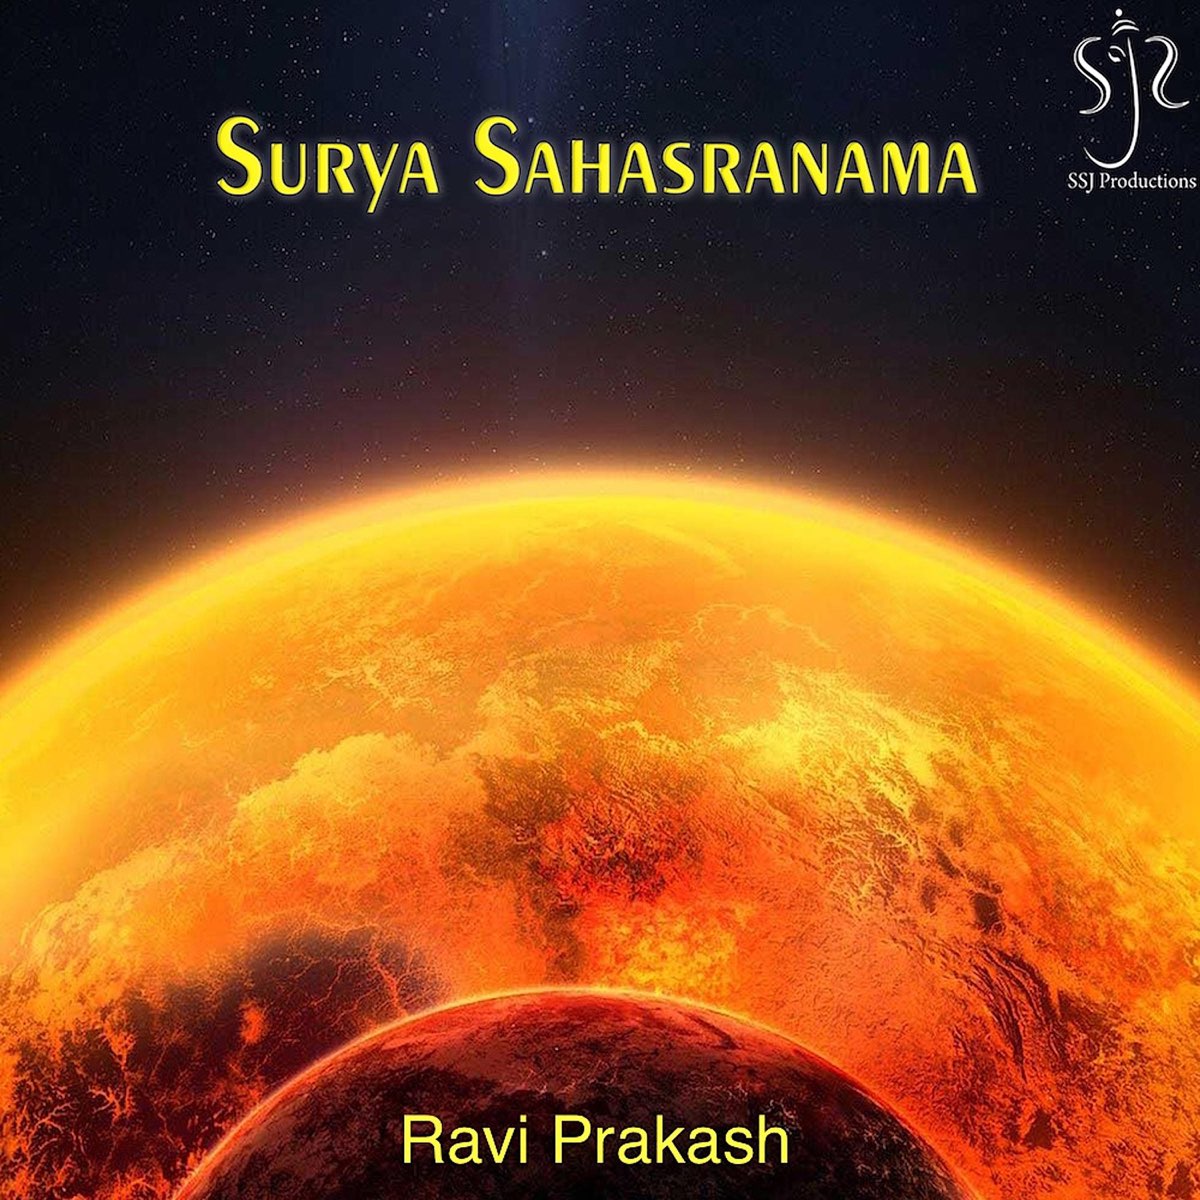 ‎Surya Sahasranama - EP - Album by Ravi Prakash - Apple Music